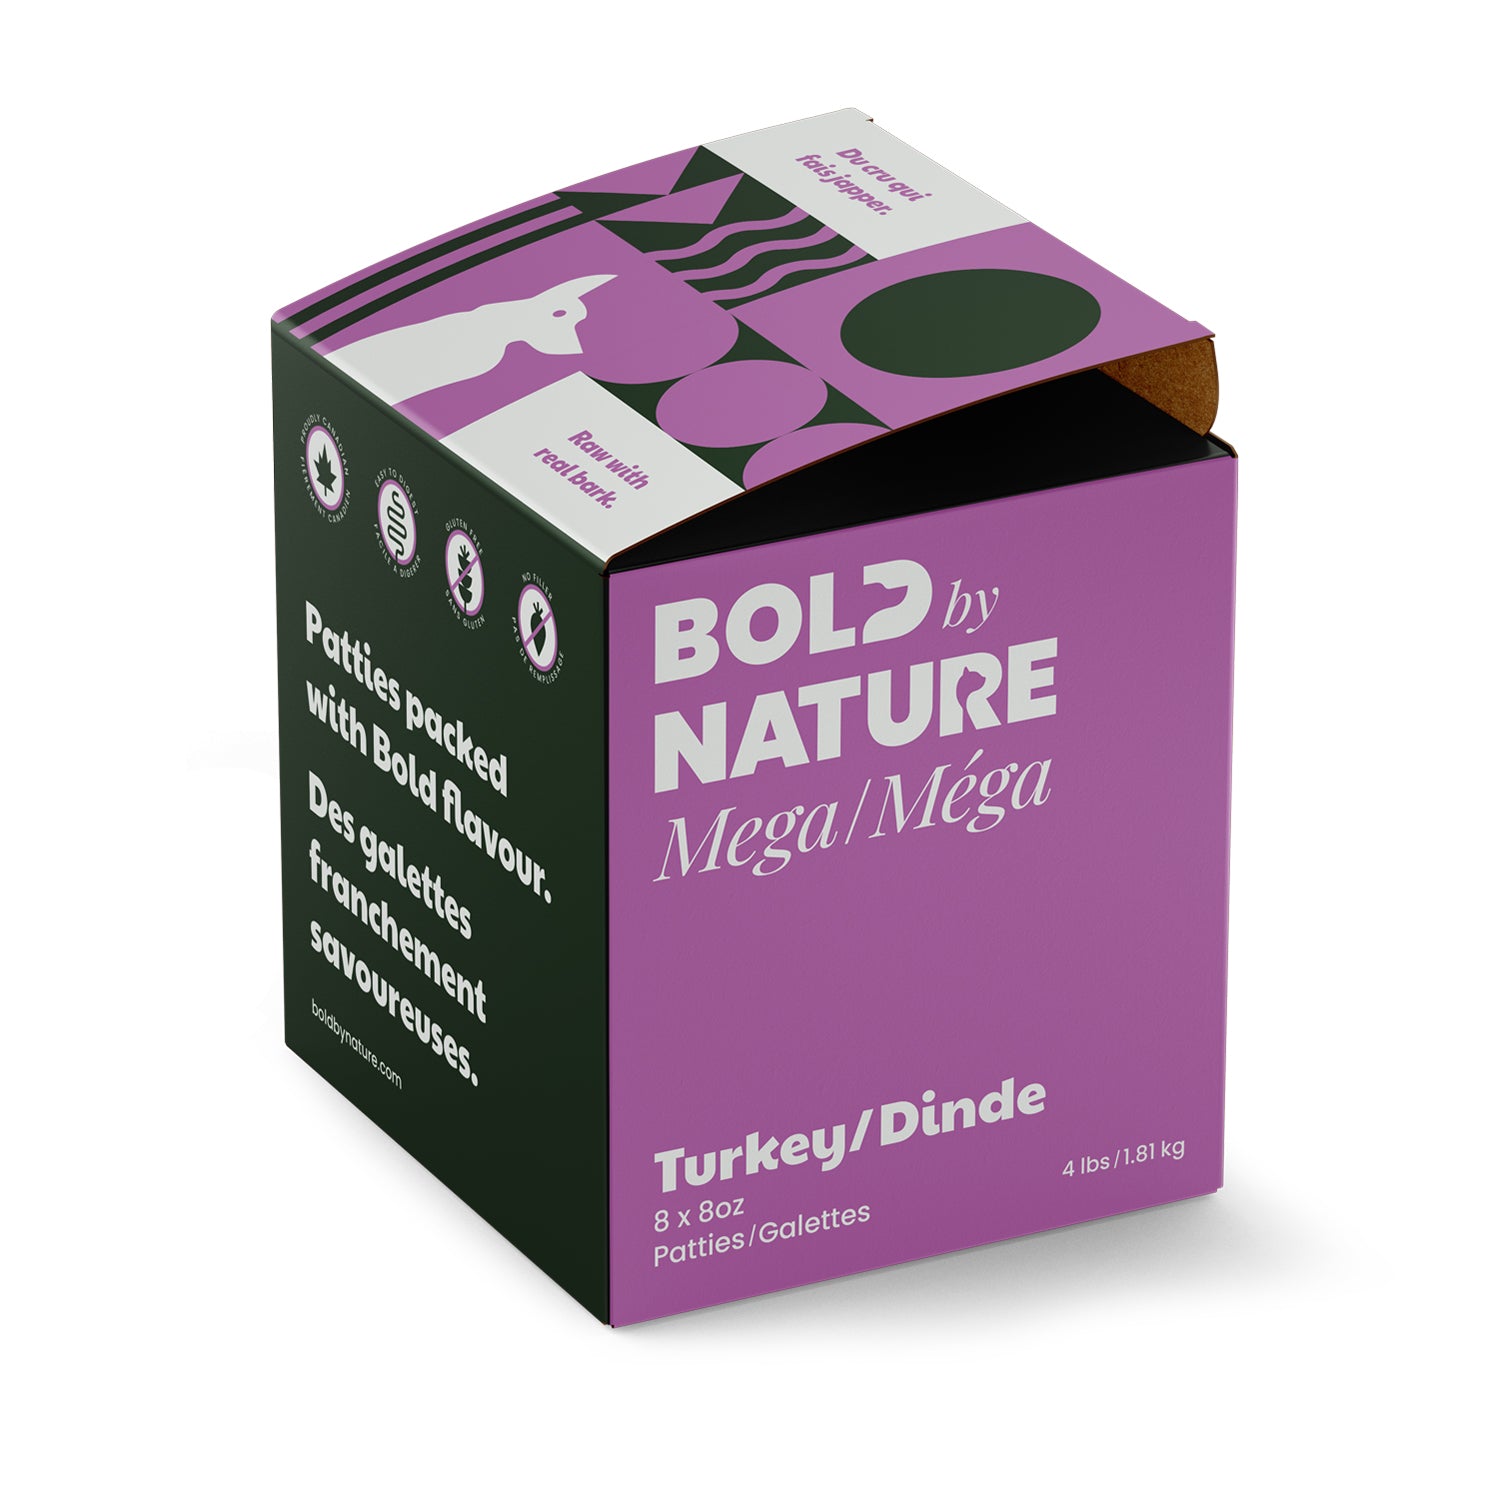 Bold by Nature - Mega Frozen Raw Turkey Patties Dog Food (1.81kg/4lb) - Small Purple Box